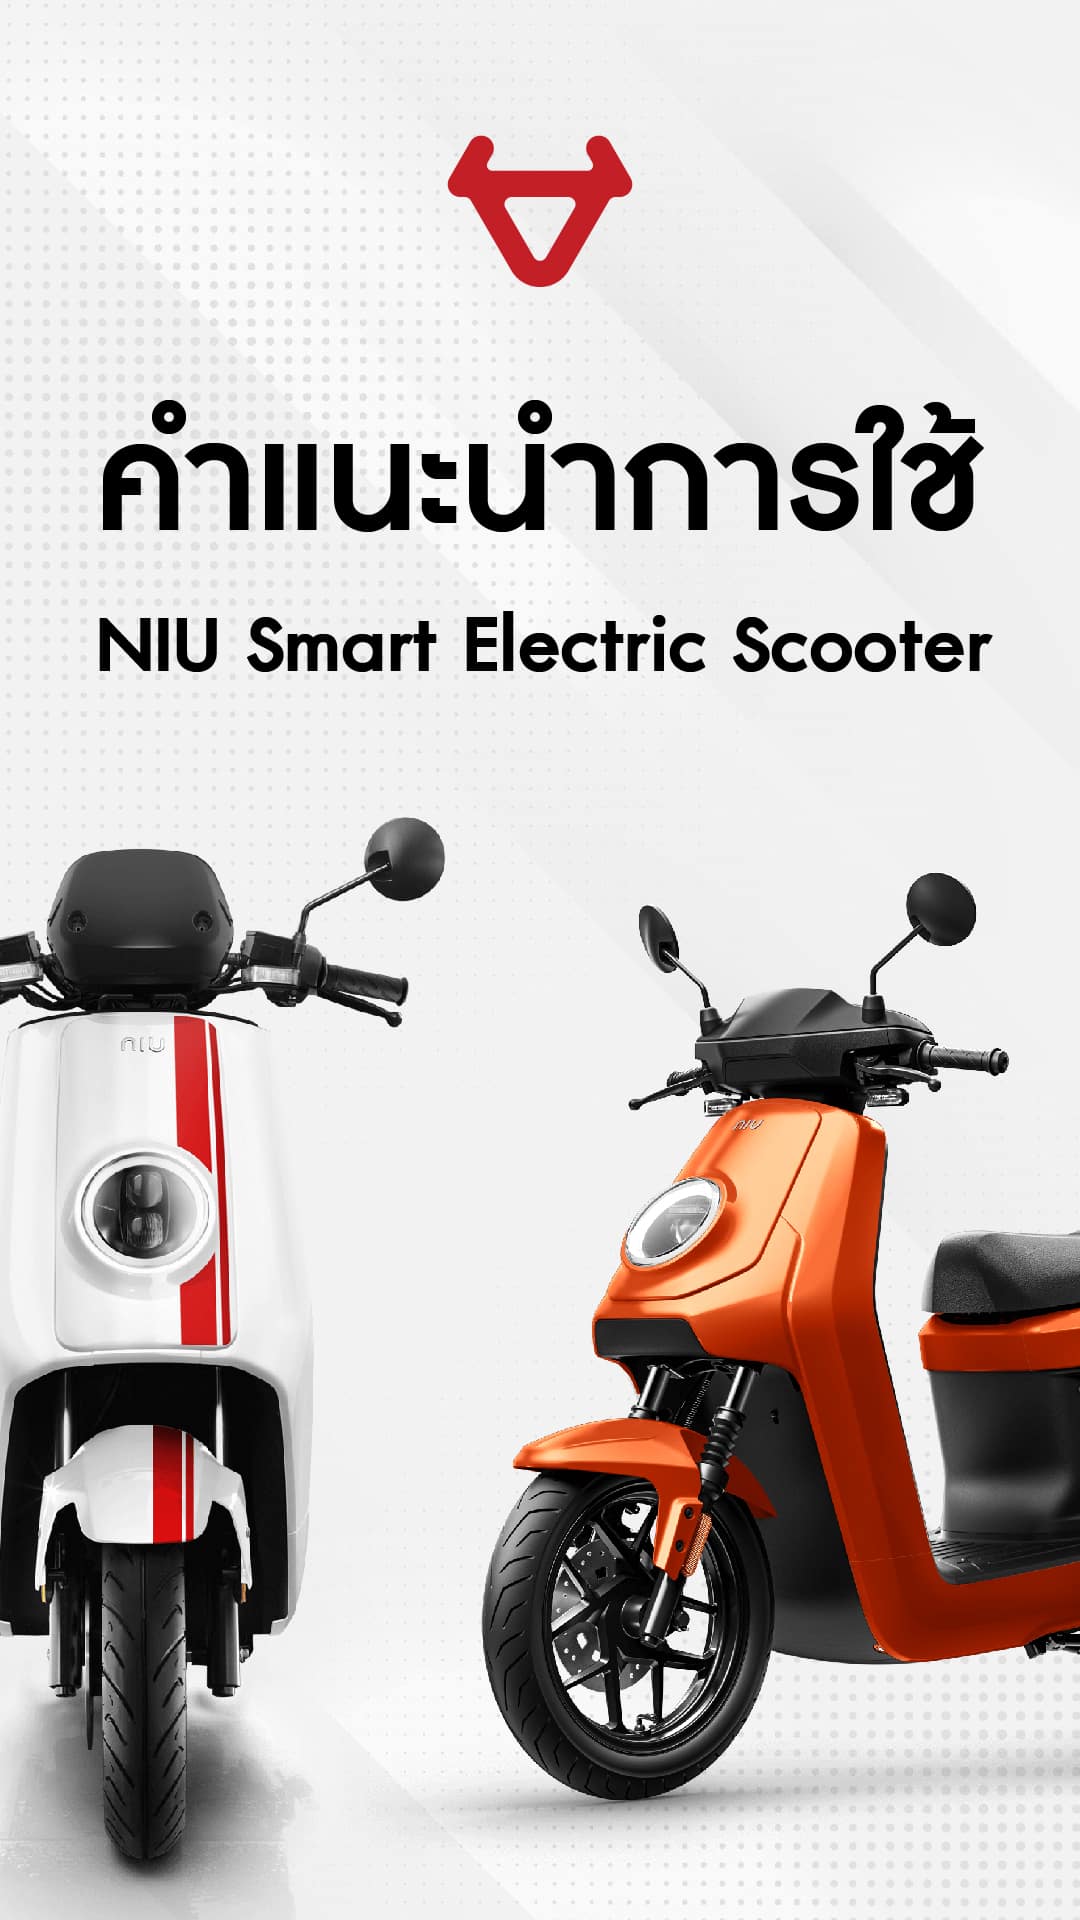 คำแนะนำการใช้ NIU Smart Electric Scooter 01